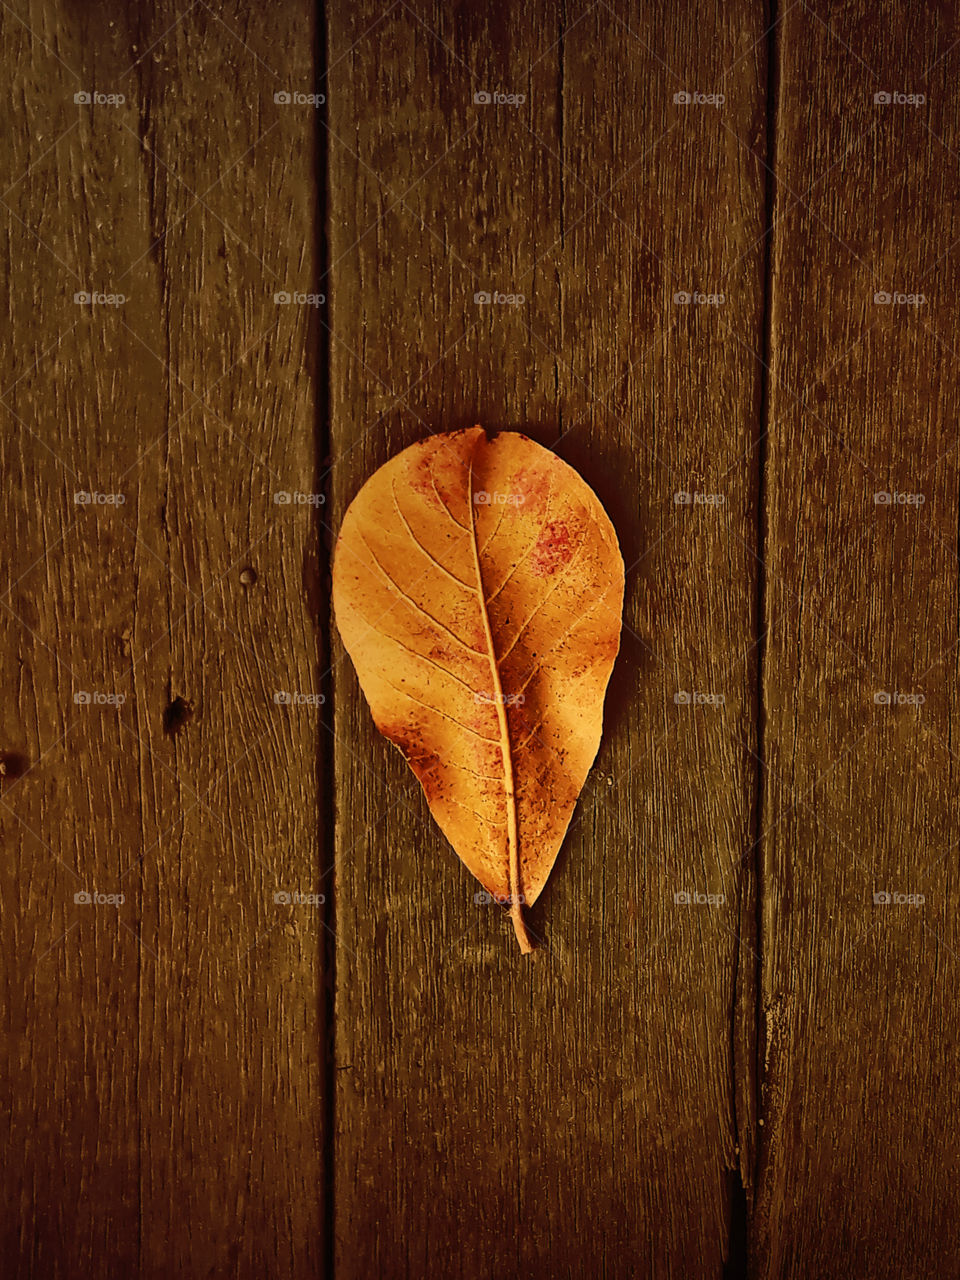 leaf in the wood floor